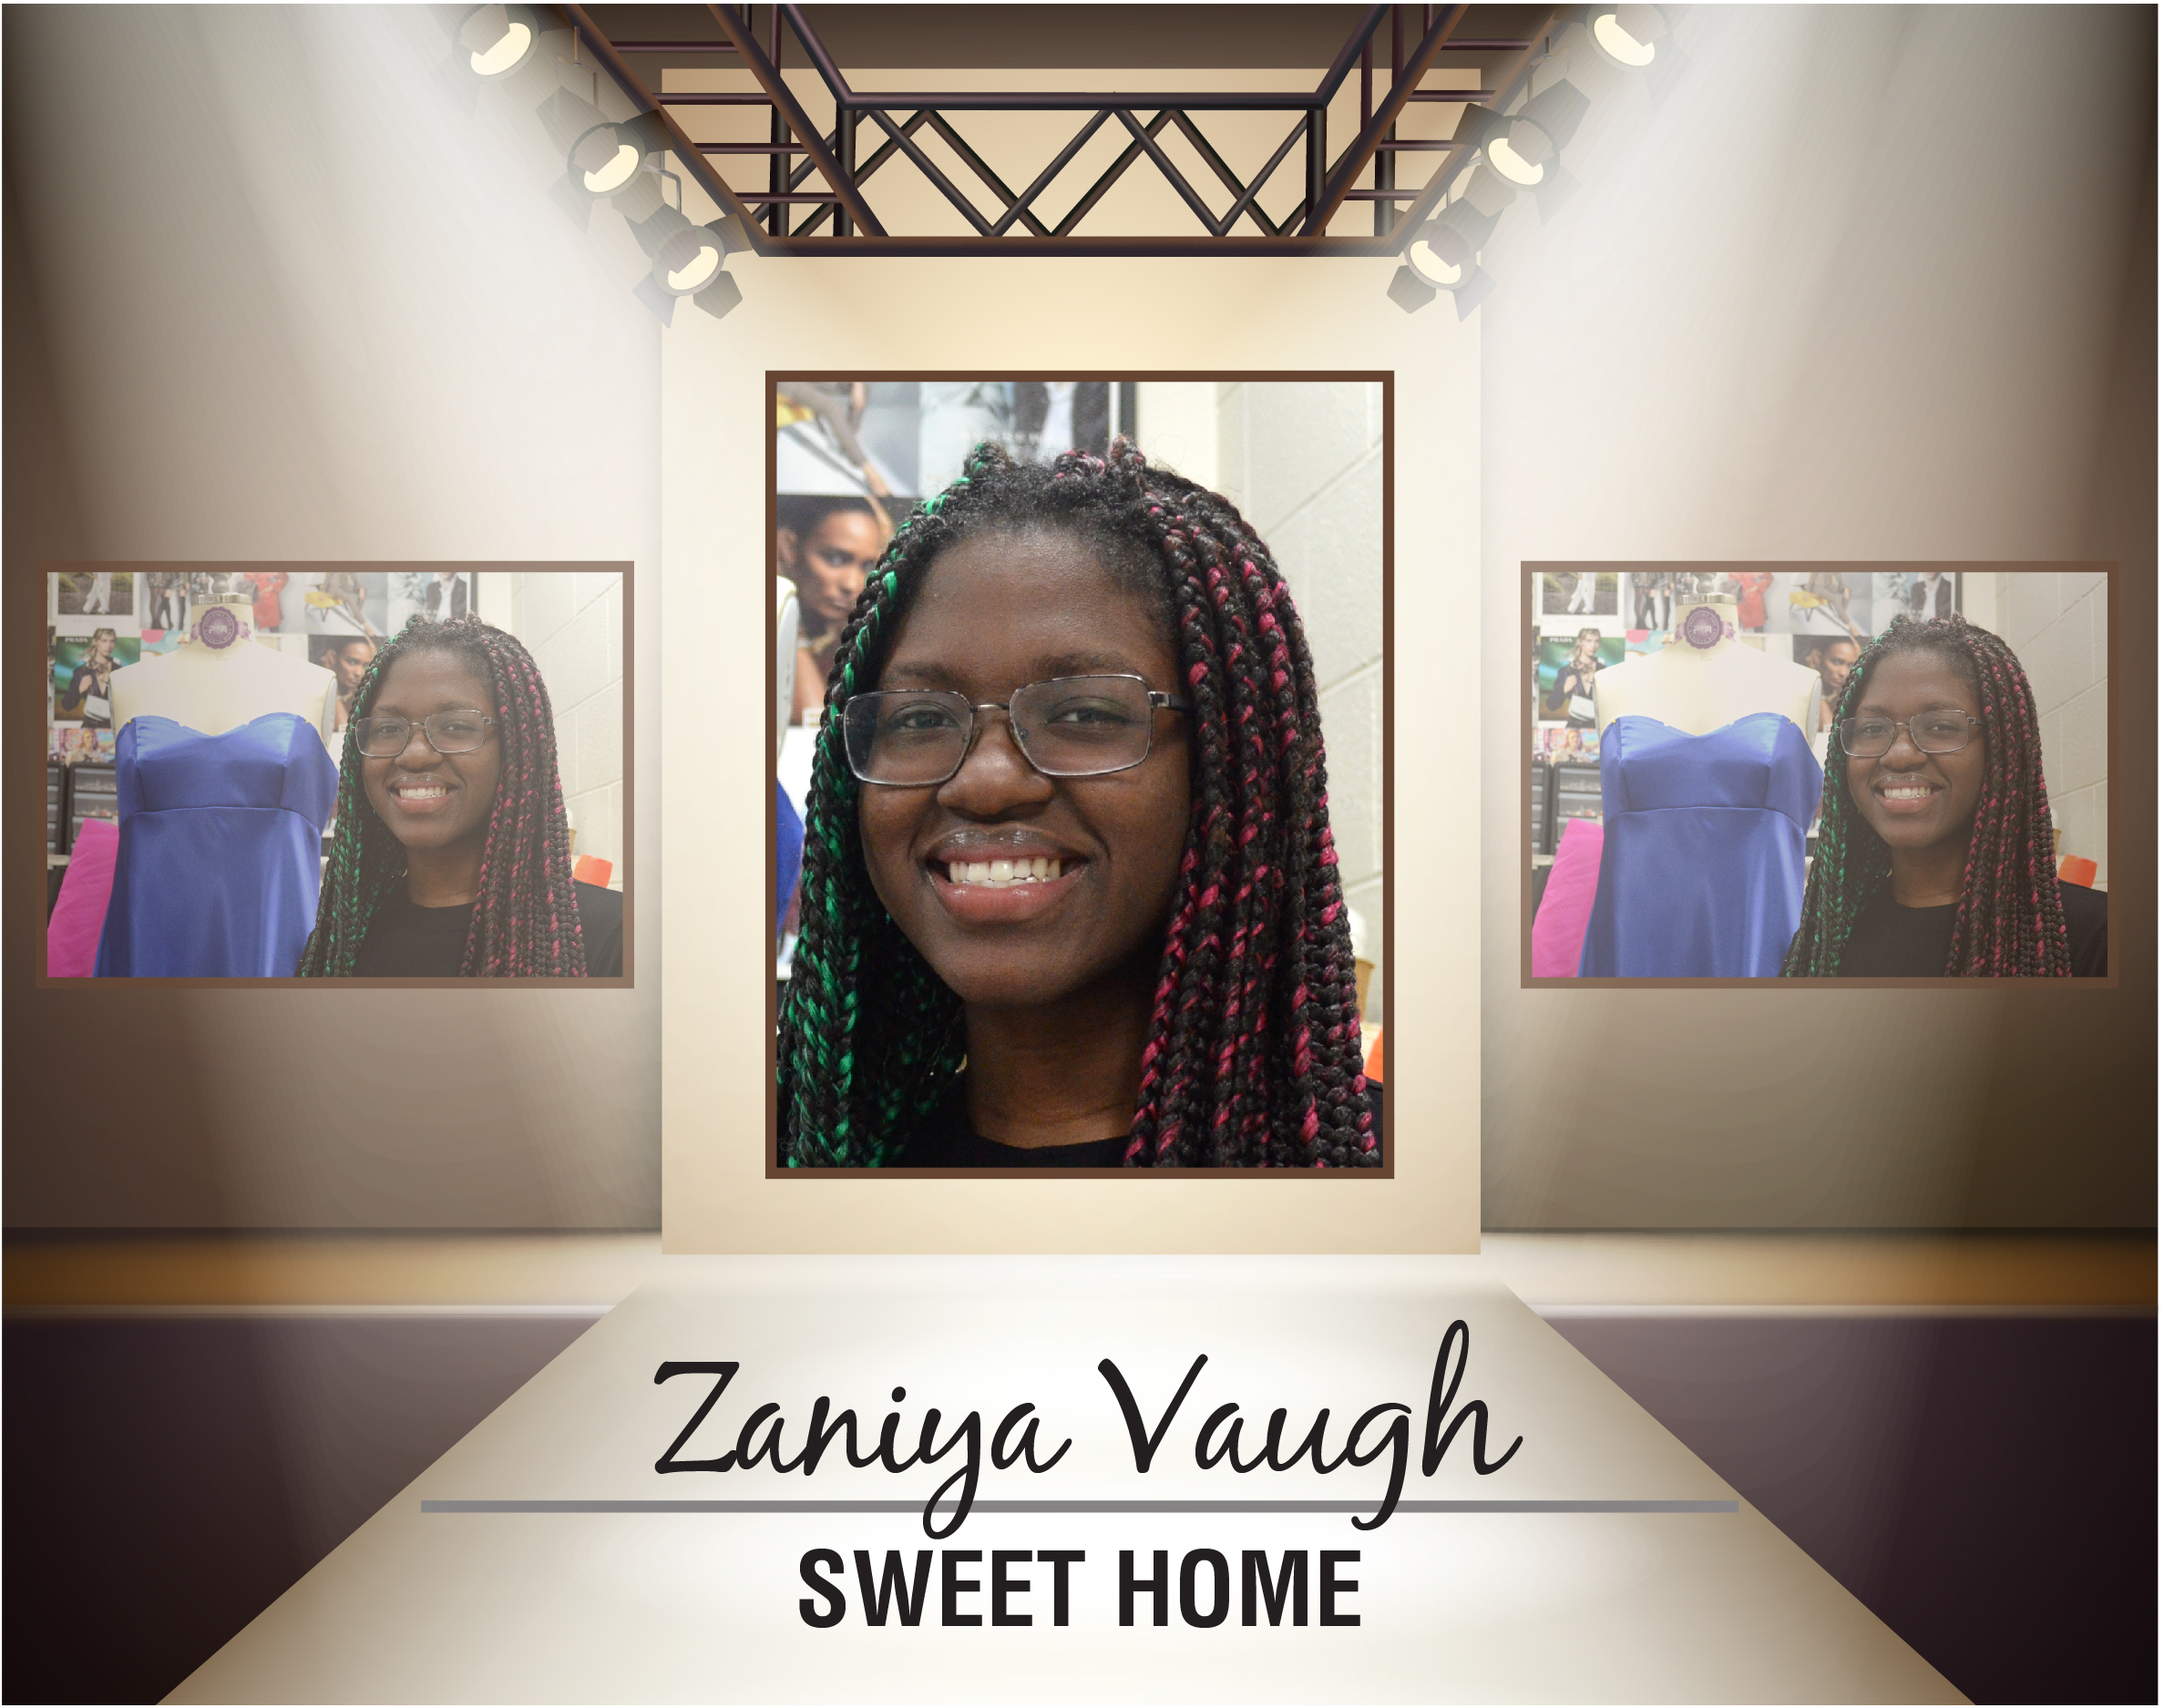 Zaniya Vaugh, Sweet Home